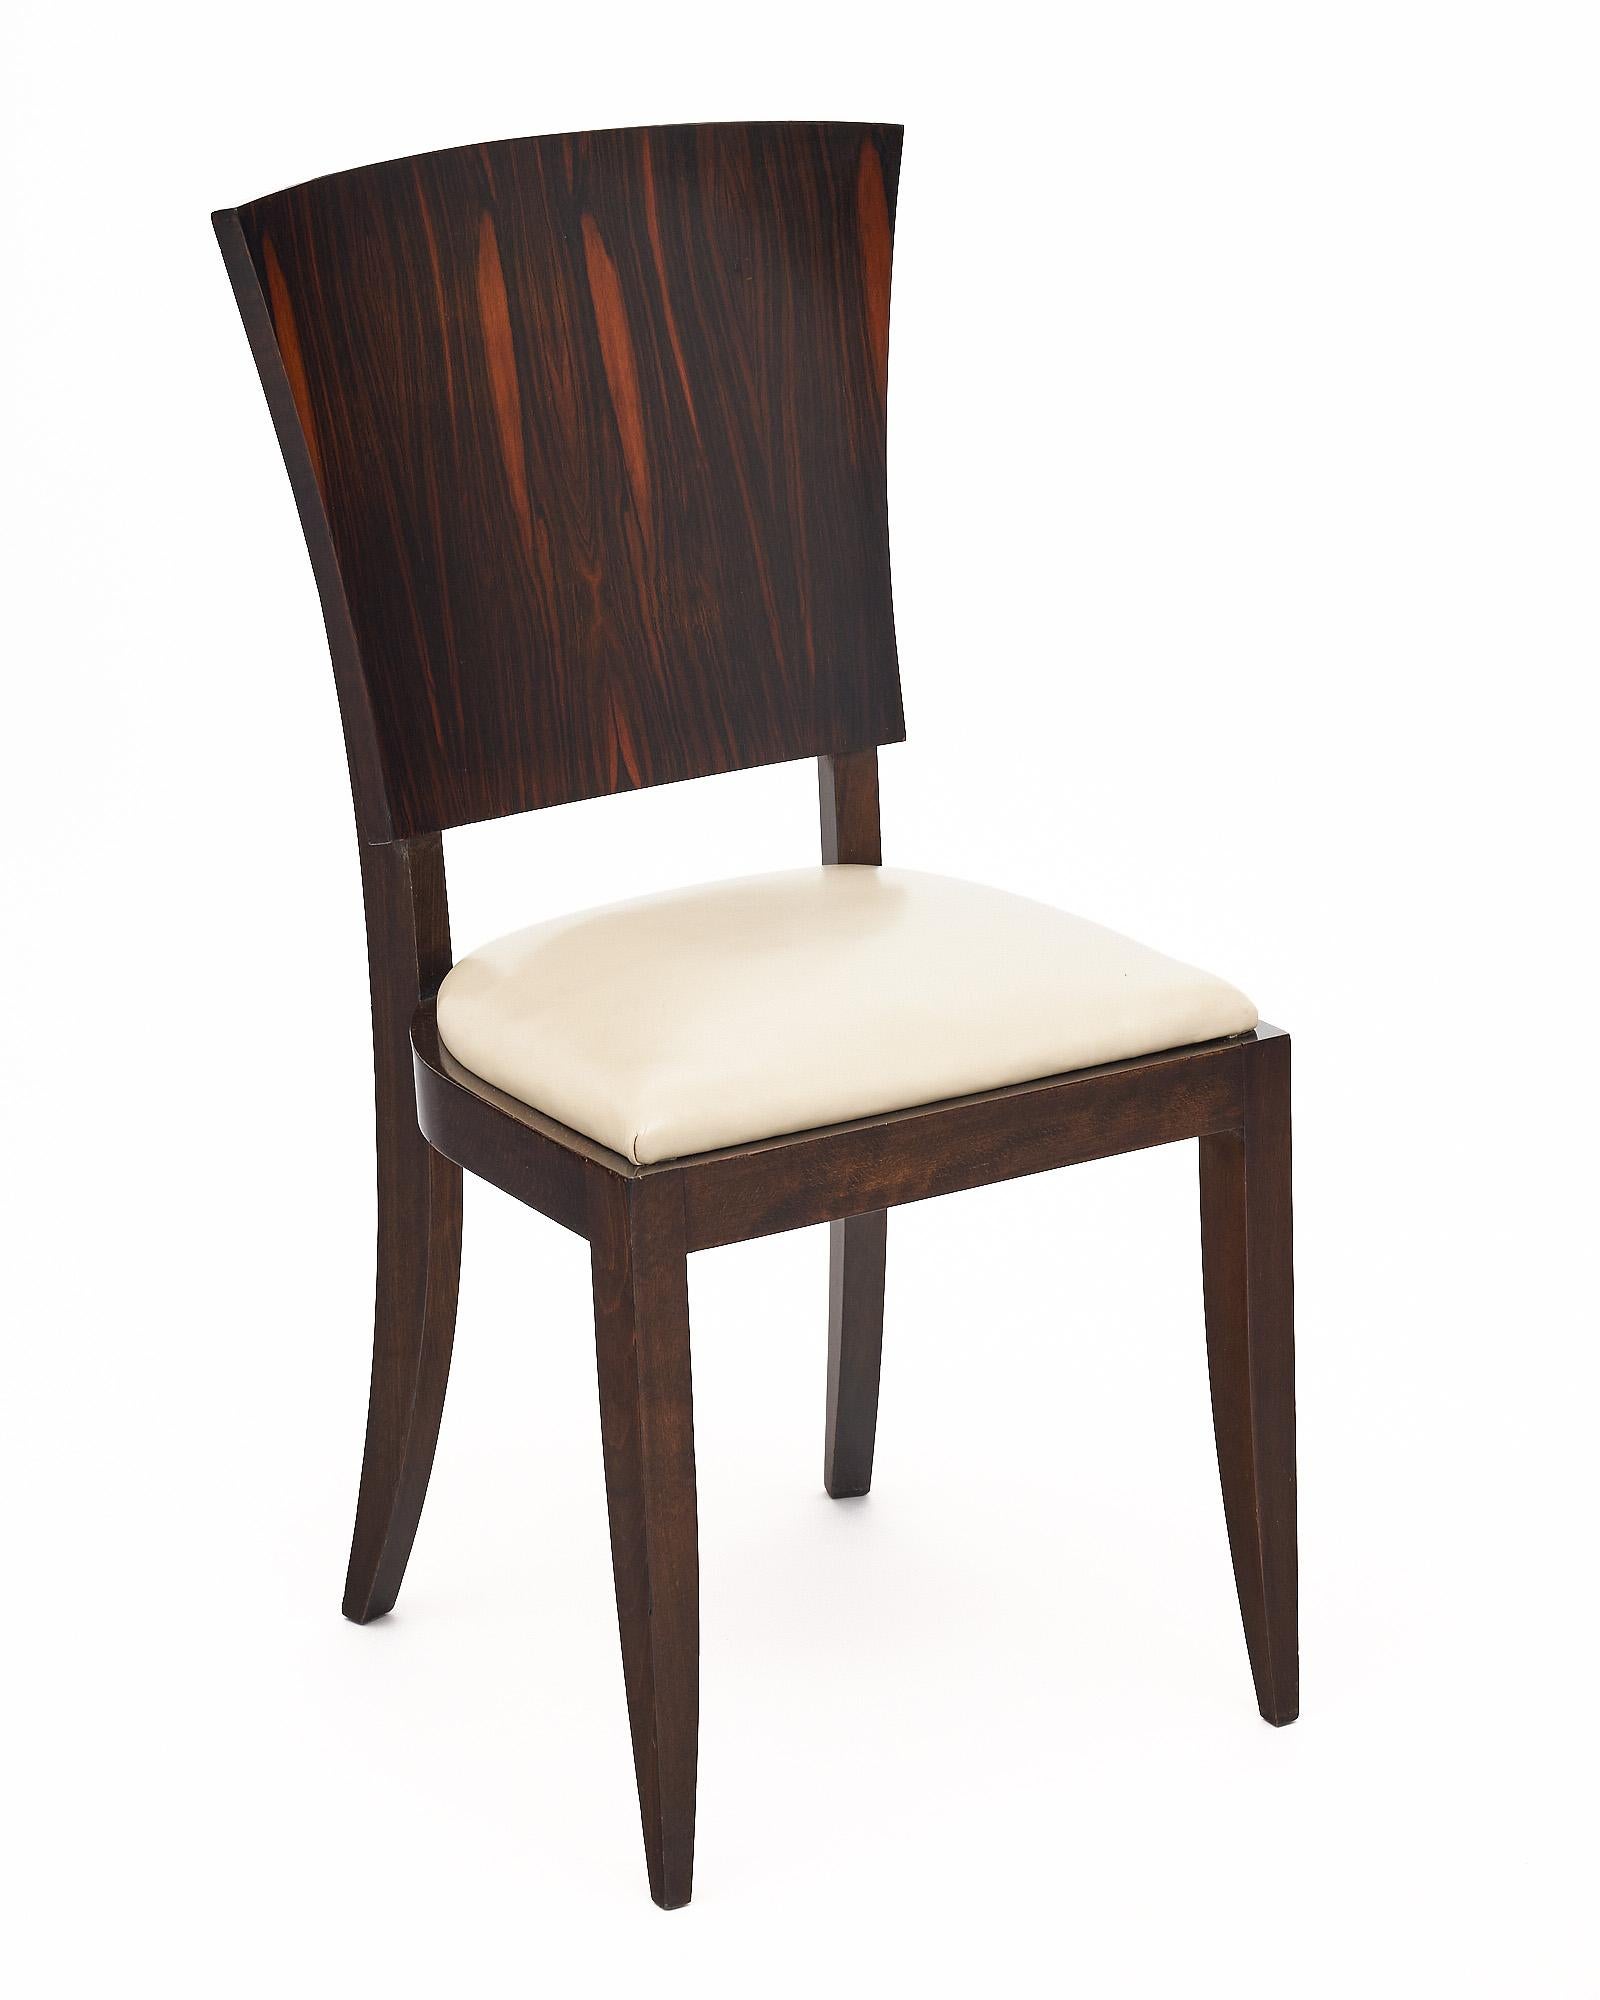 Ensemble de six chaises de salle à manger de la période Art Déco en France à la manière de Jules Leleu. Les chaises sont fabriquées avec des dossiers en macassar d'ébène et des sièges en cuir blanc. Les chaises ont été finies avec un vernis français